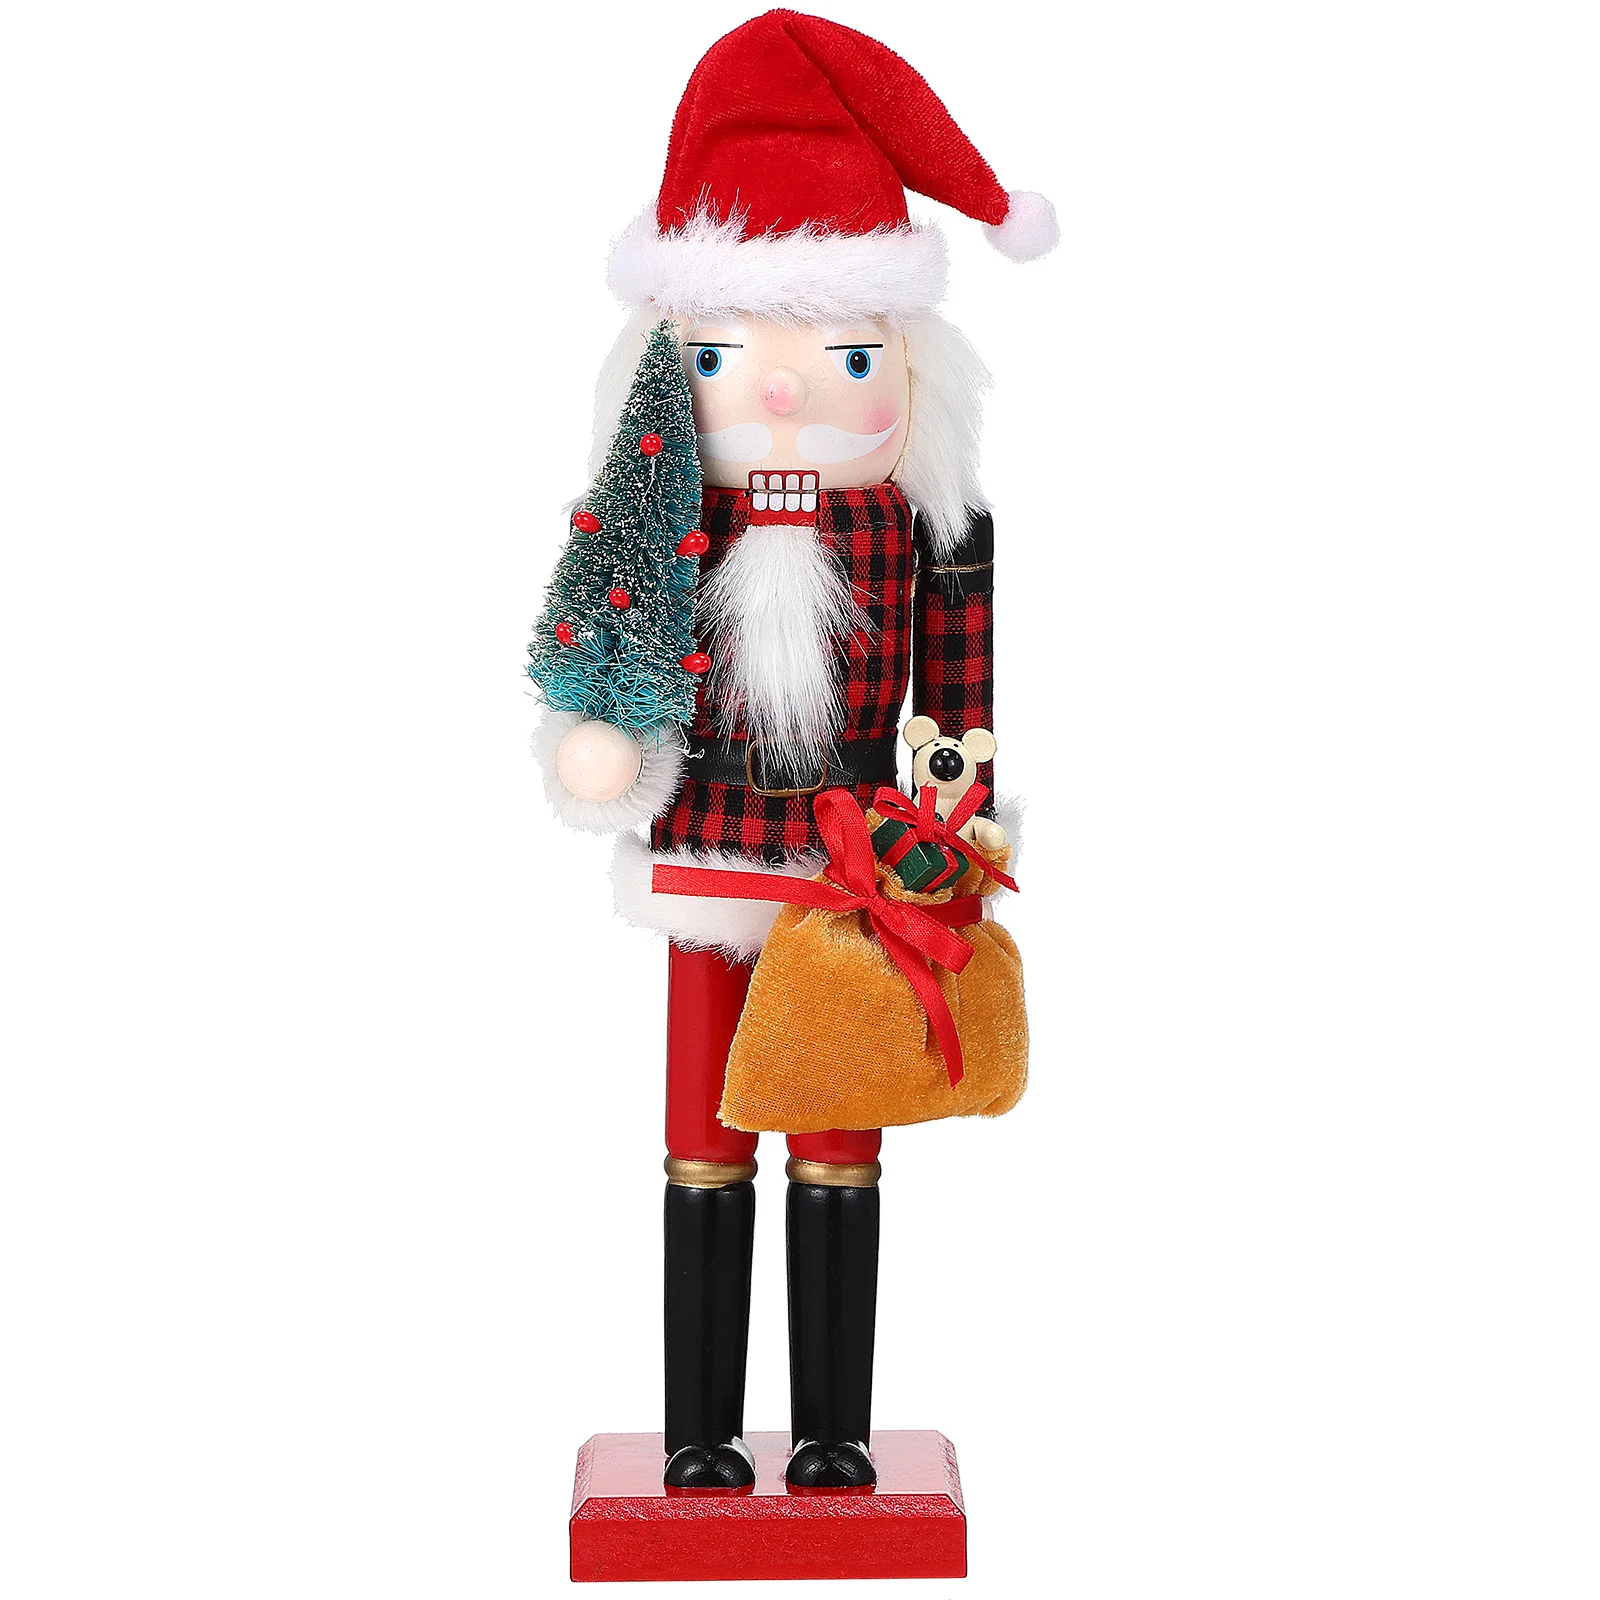 

36cm Wooden Santa Claus Nutcracker Ornament 1pcs Desktop Christmas Figure Decor Puppet Soldier Wooded Nutcrackers